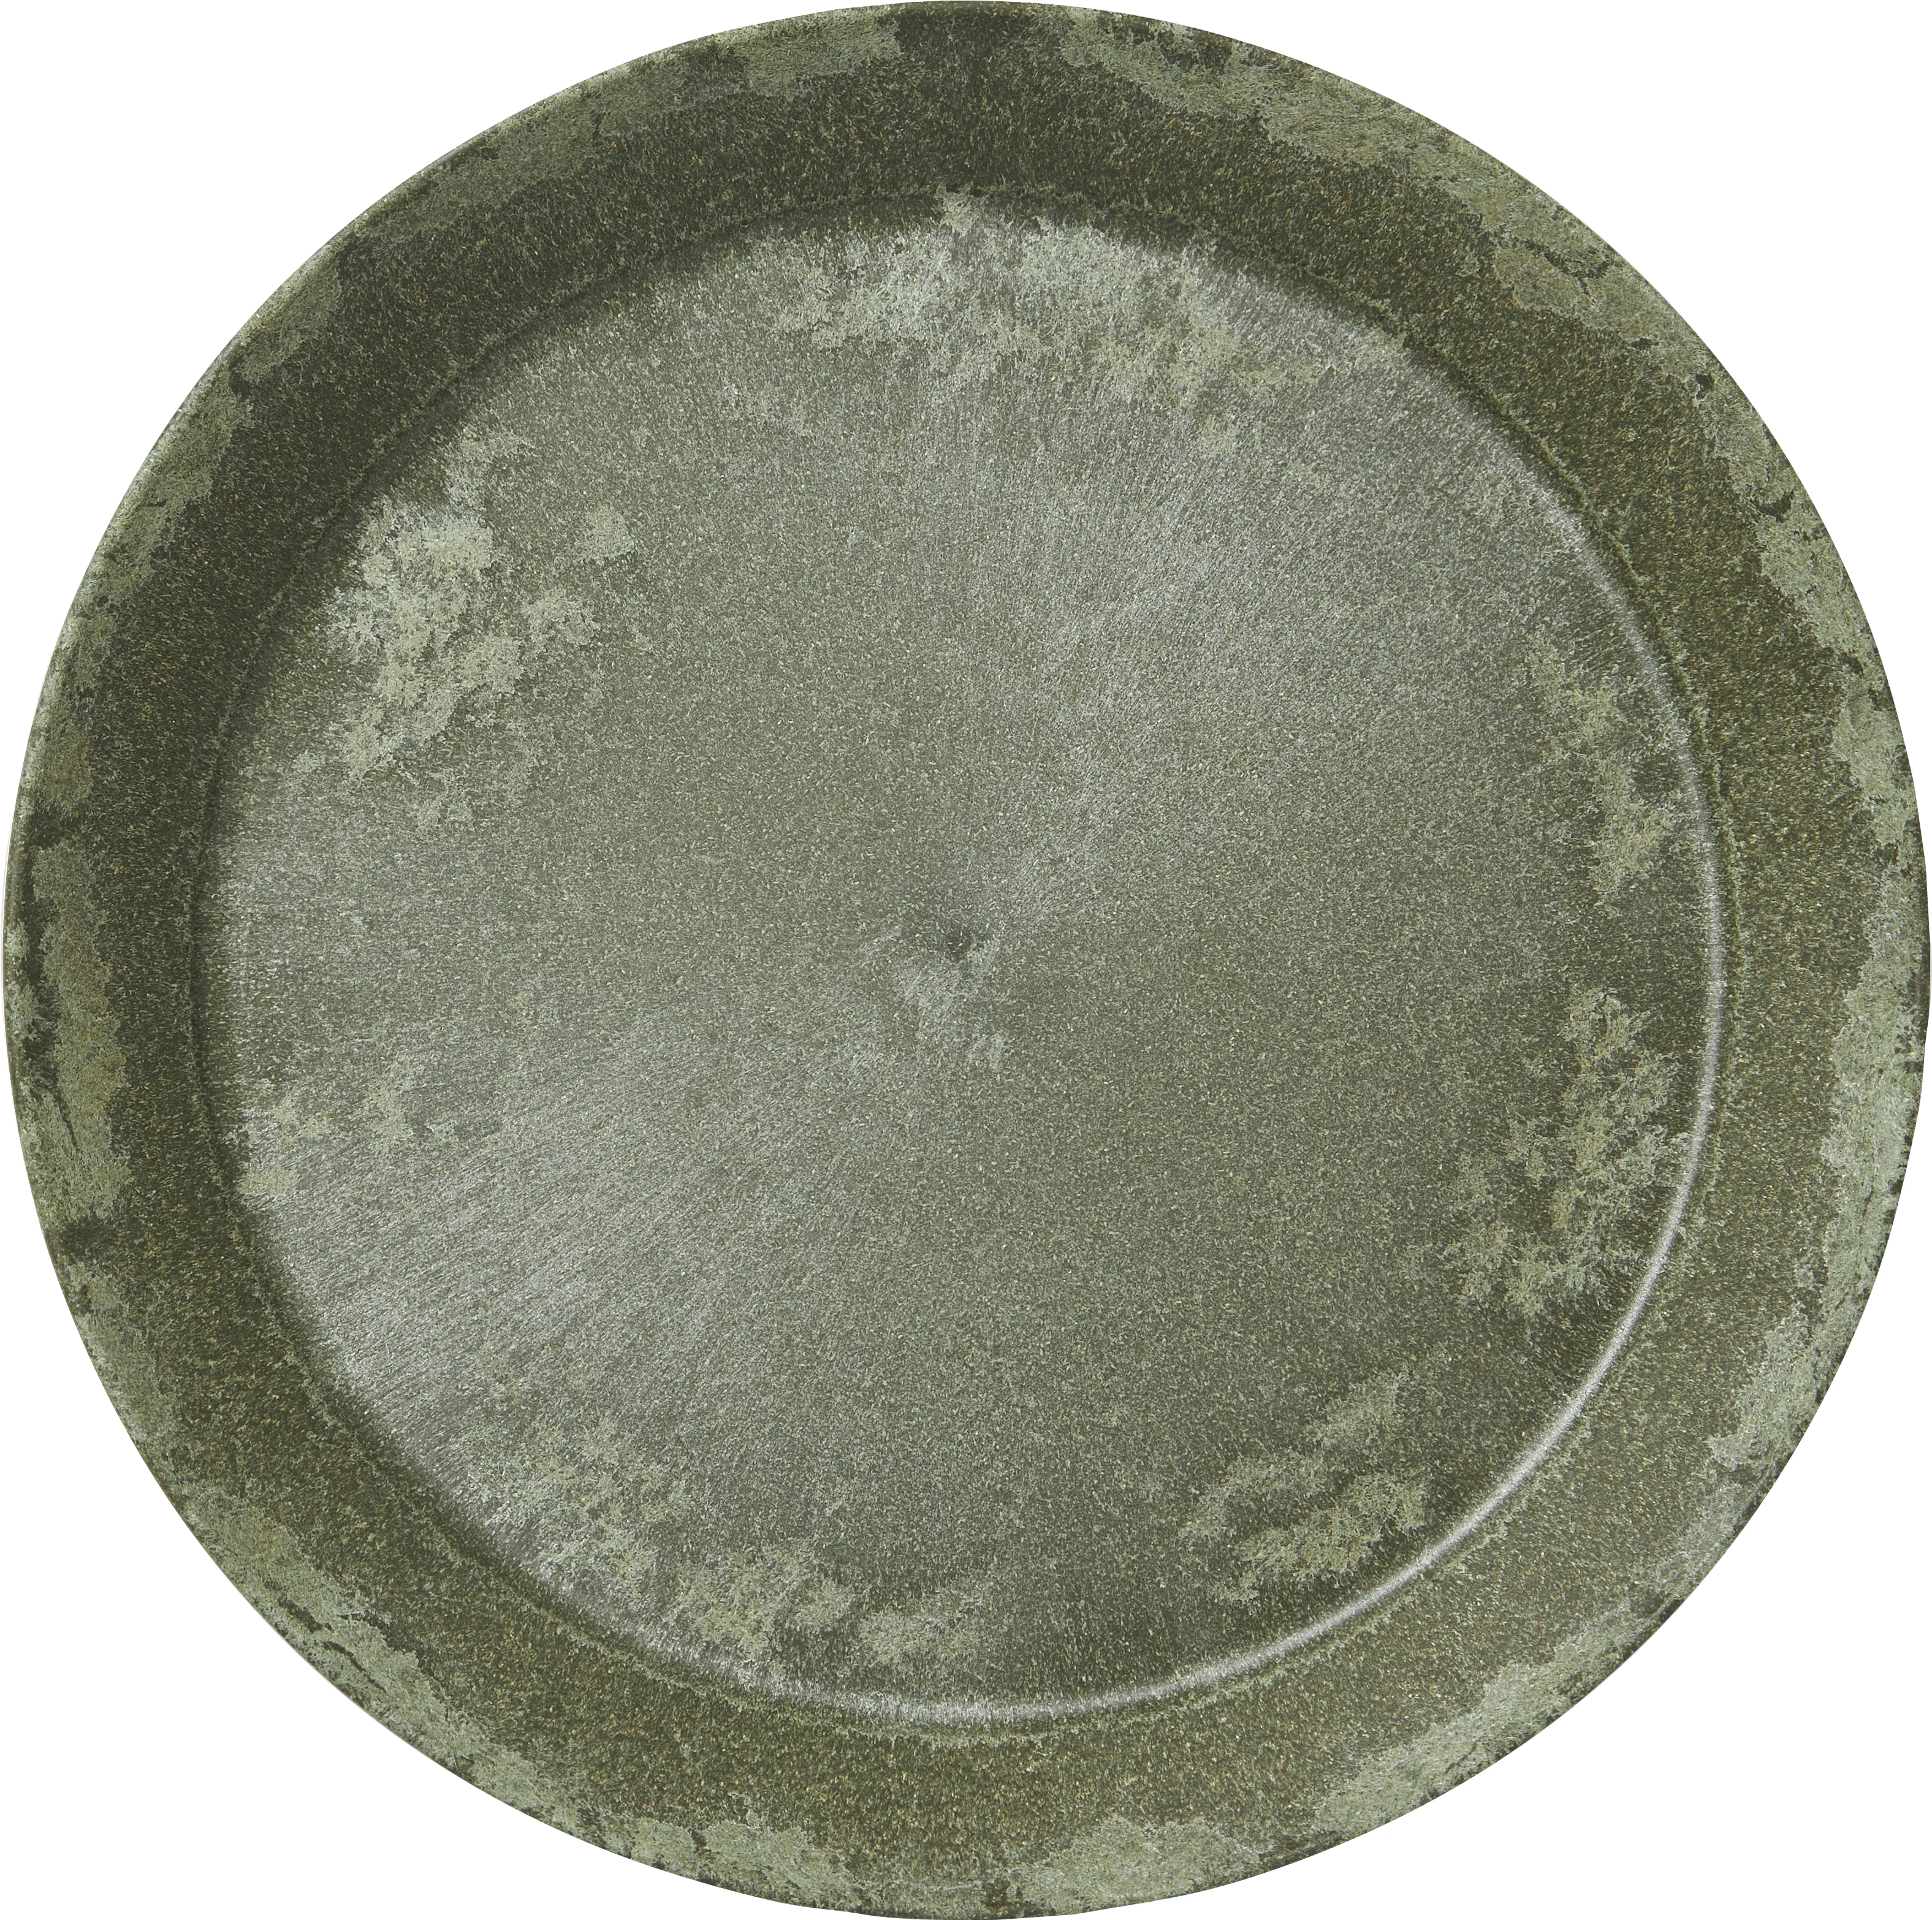 Luups tallerken uden fane, grøn, ø25 cm